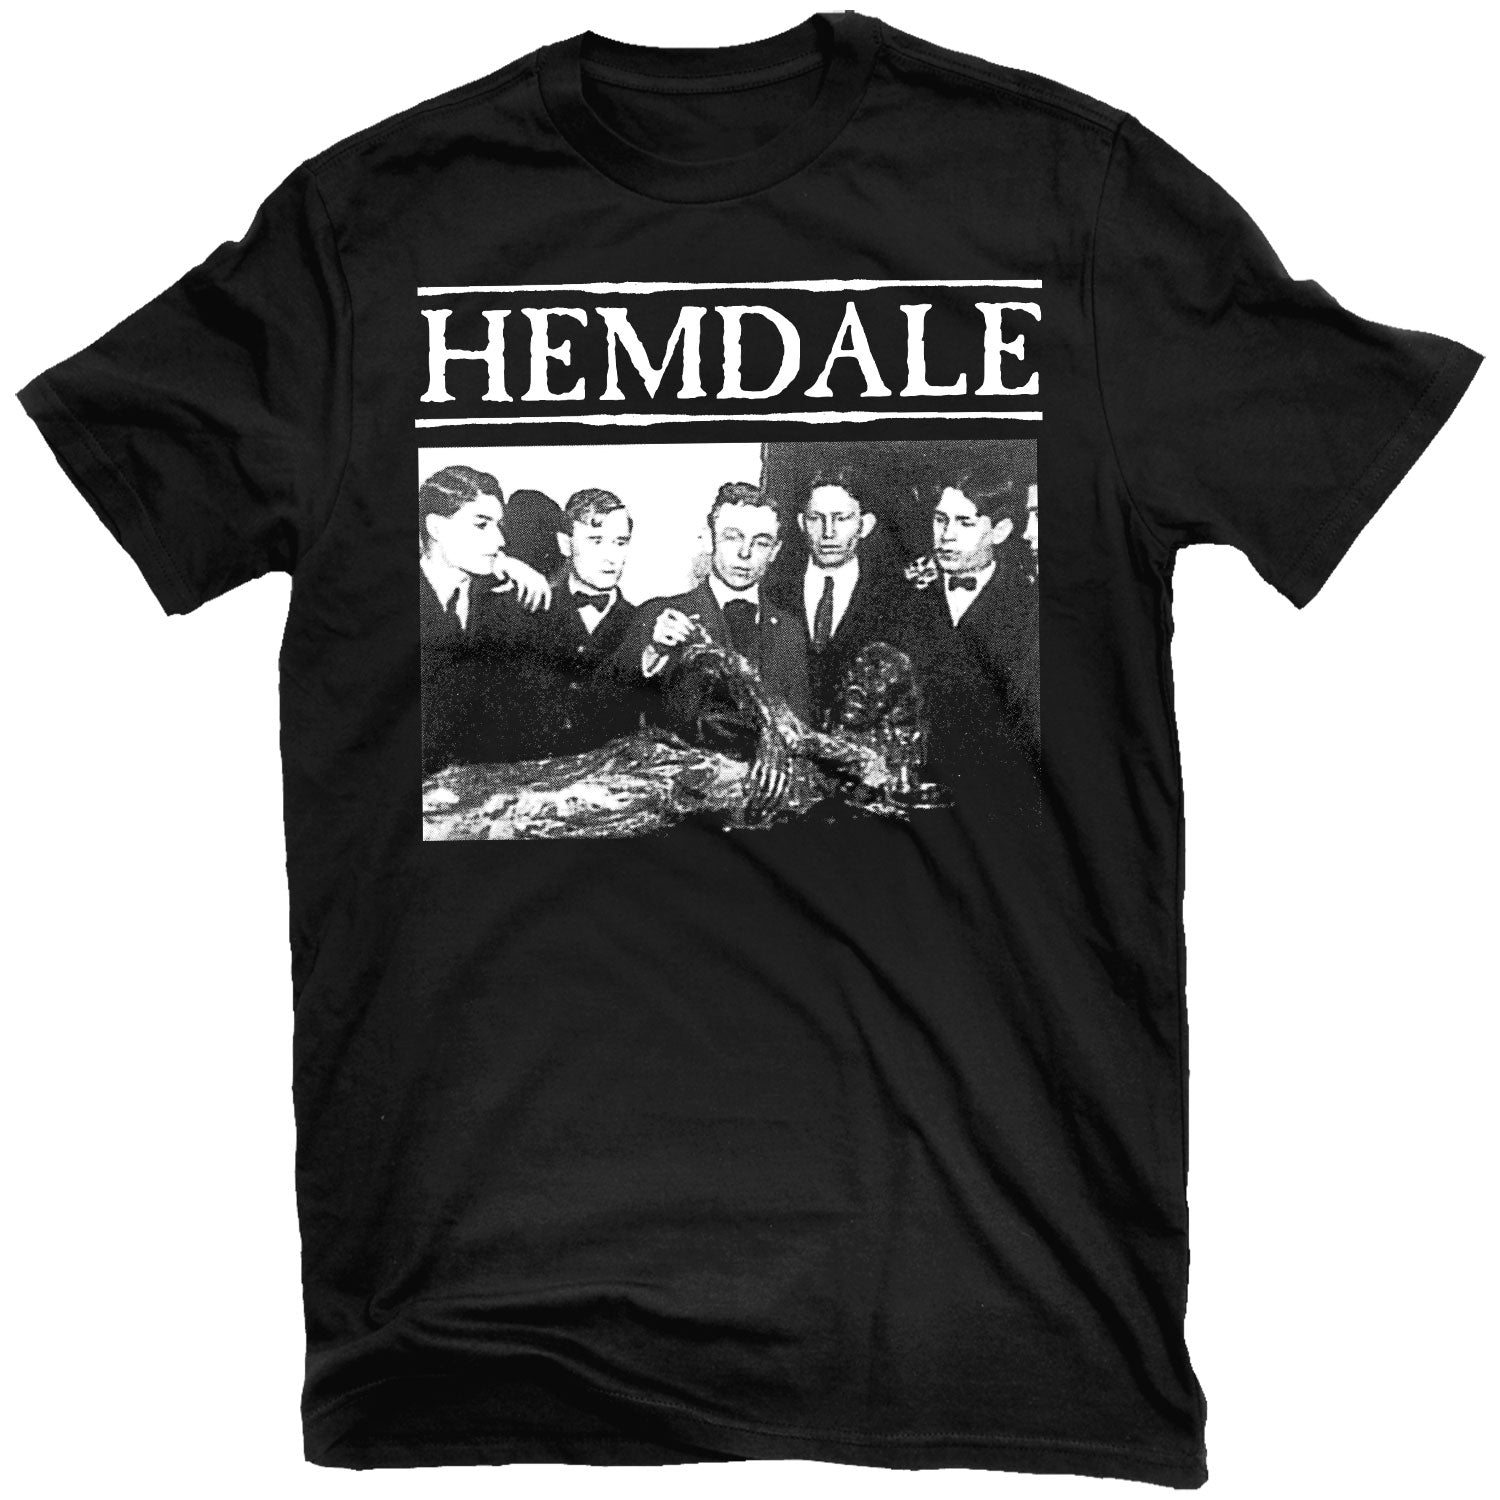 Hemdale "I Am Dead" T-Shirt